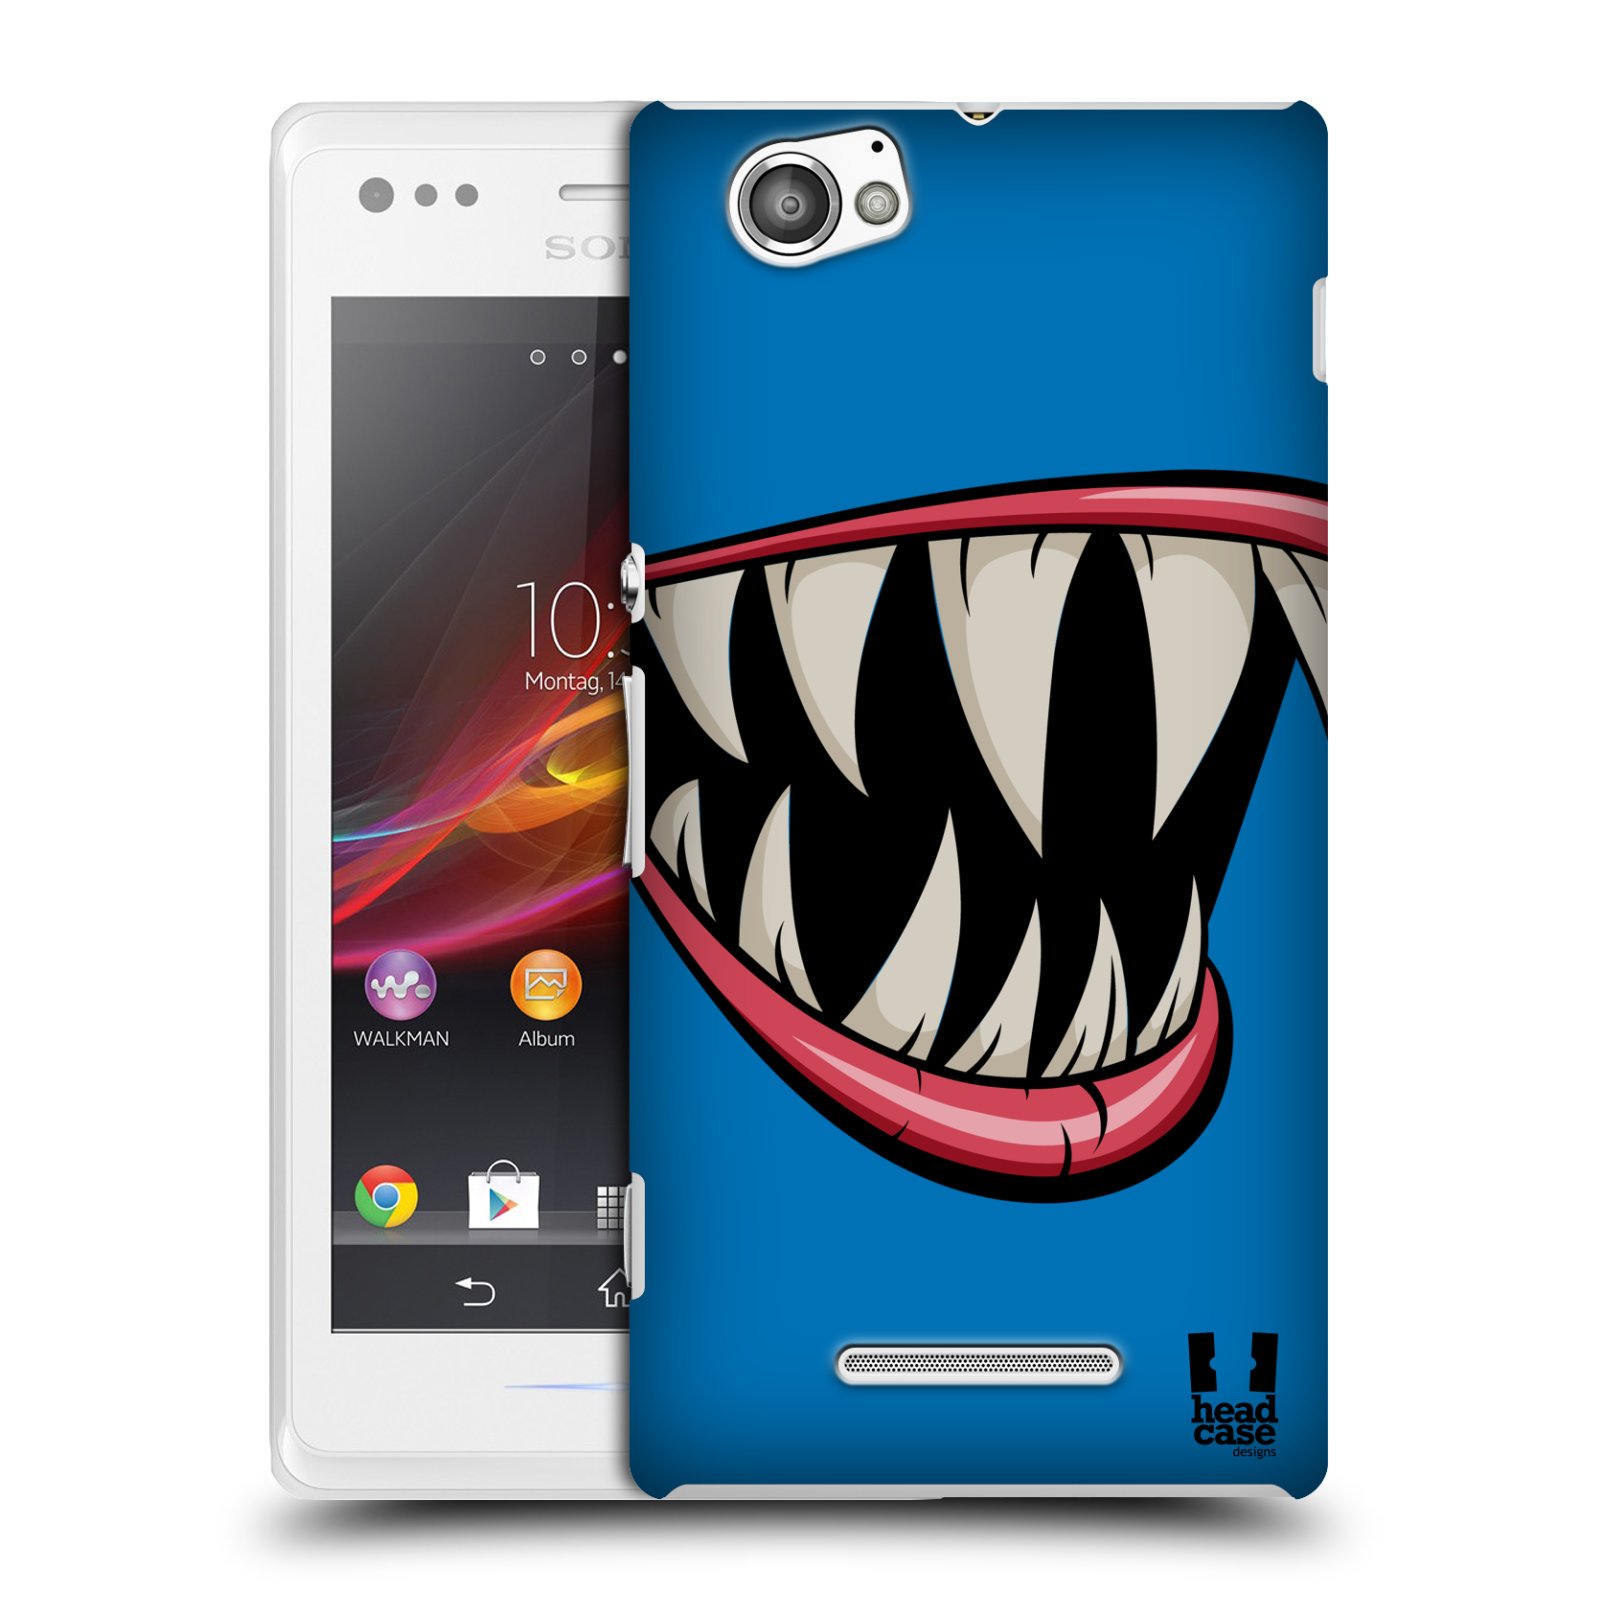 HEAD CASE plastový obal na mobil Sony Xperia M vzor Zvířecí úsměv ryba modrá